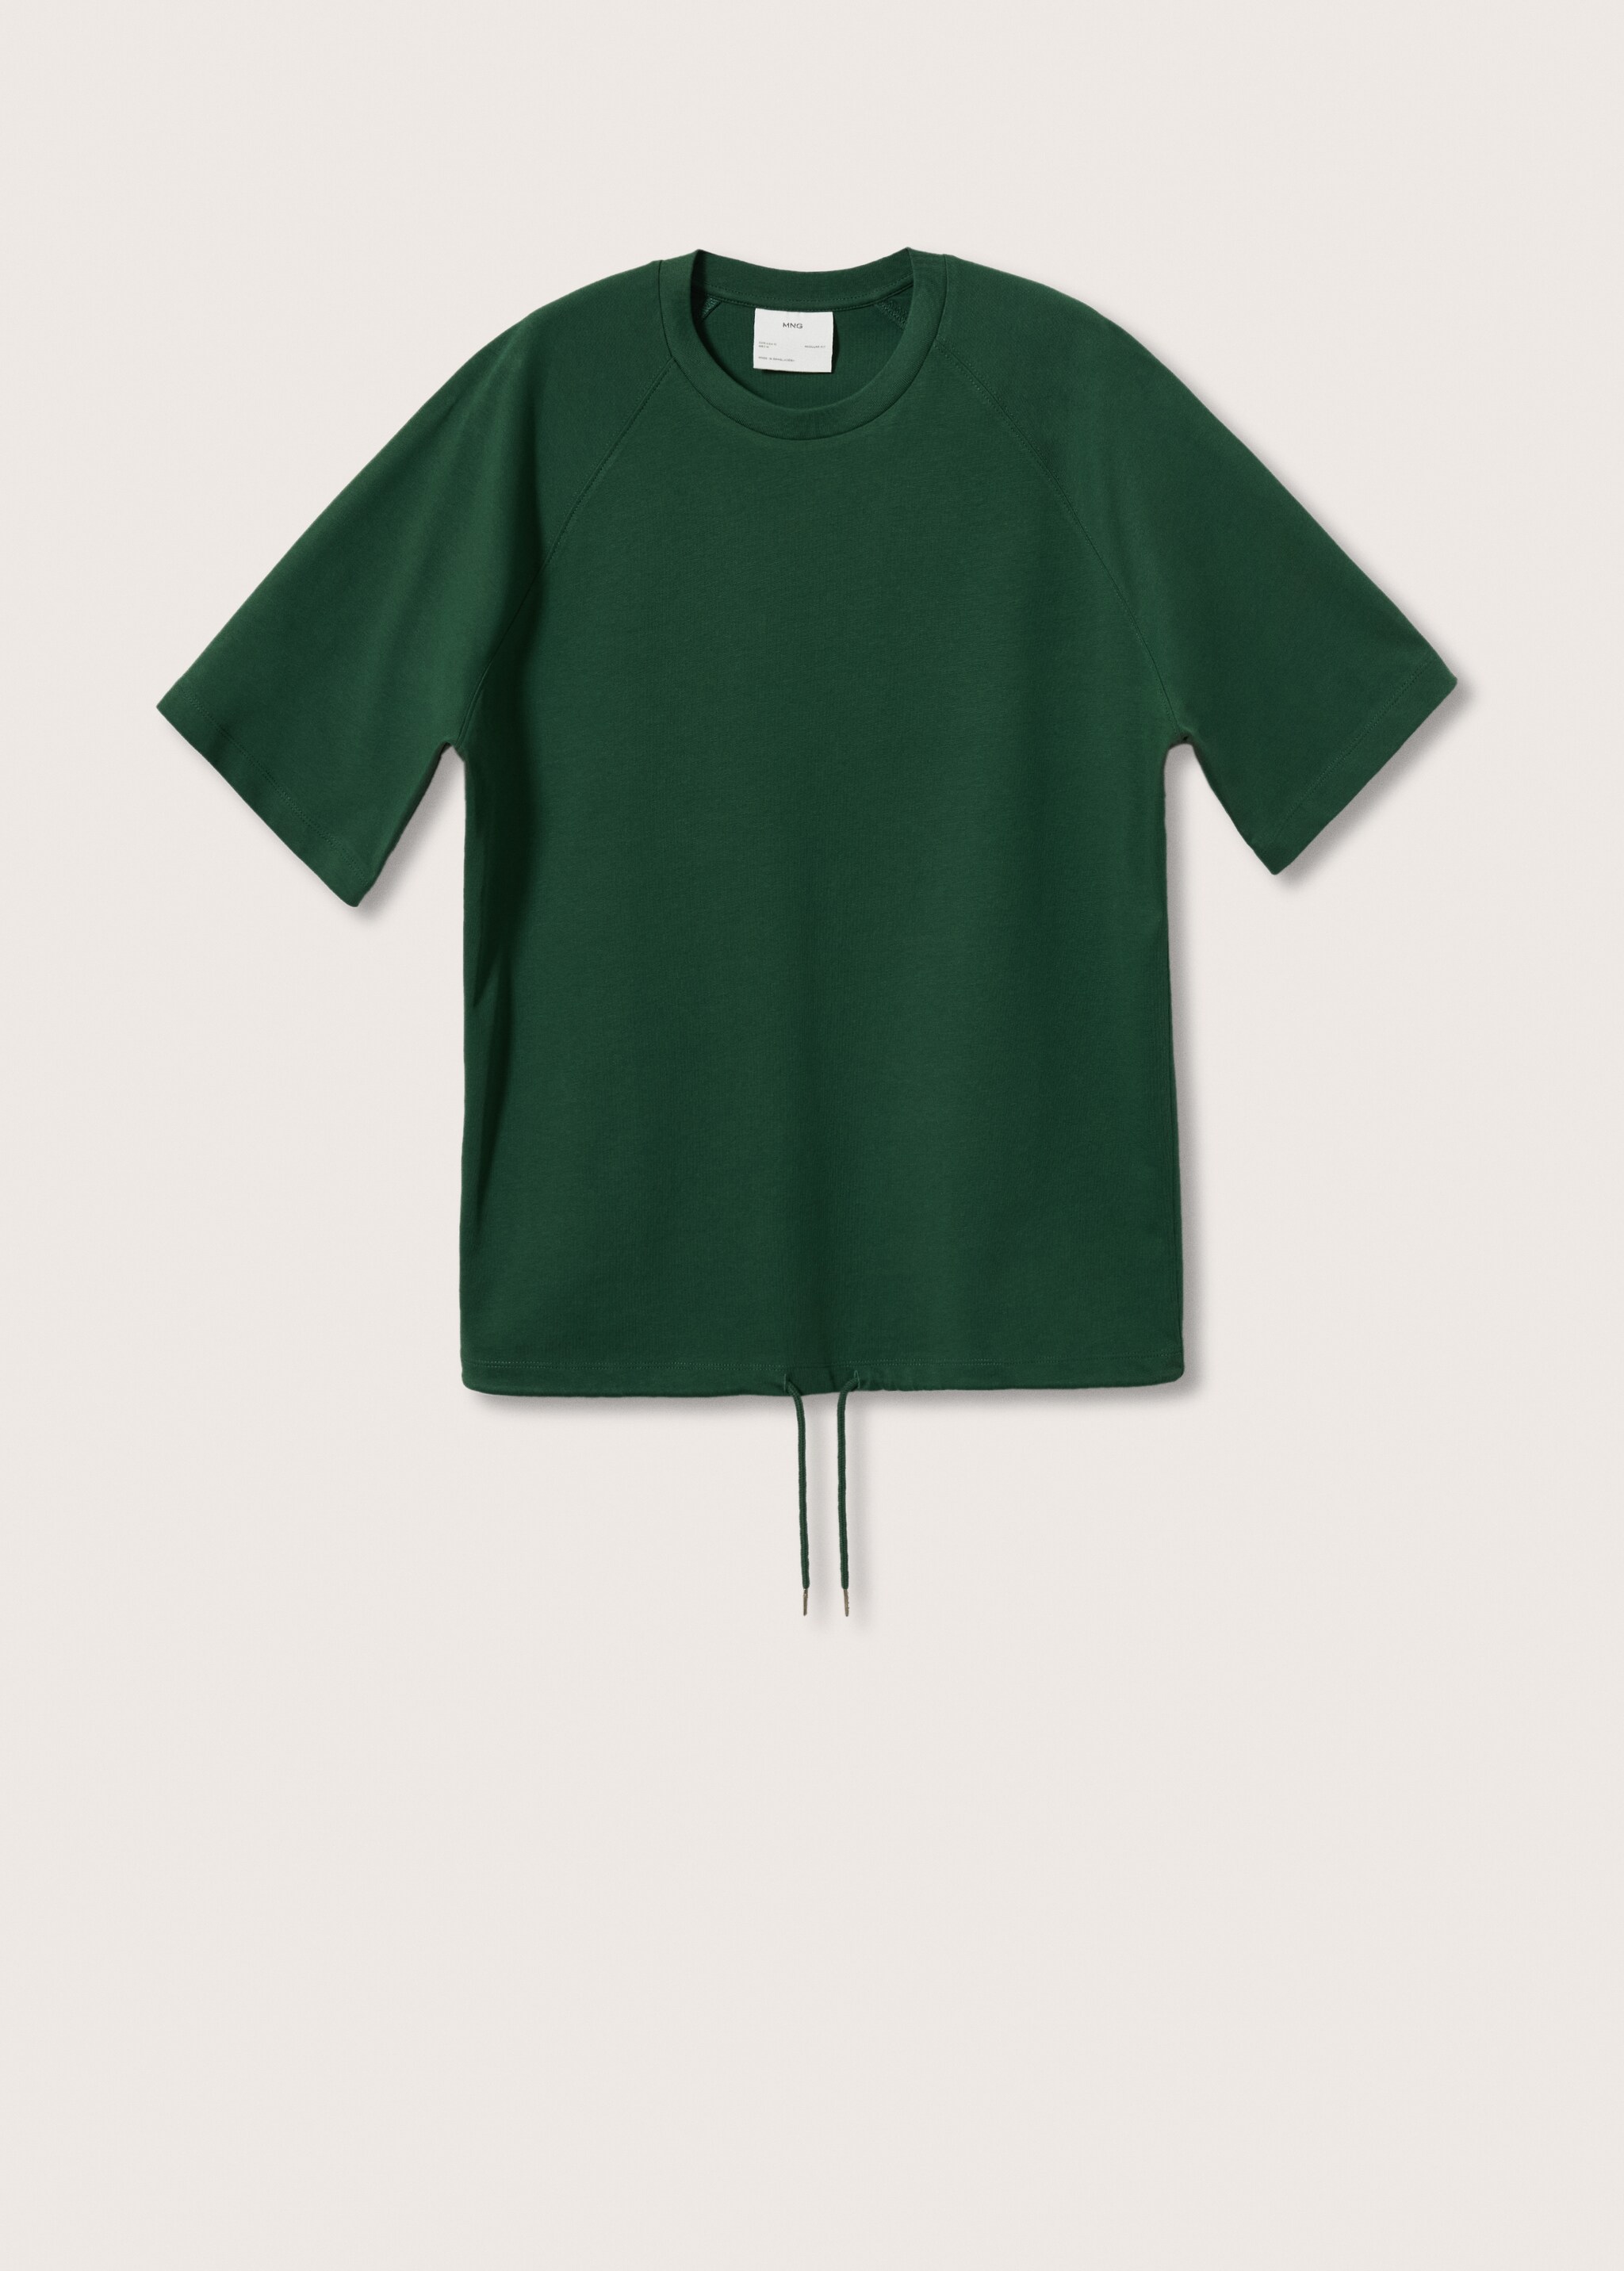 Camiseta algodon cordón - Artículo sin modelo